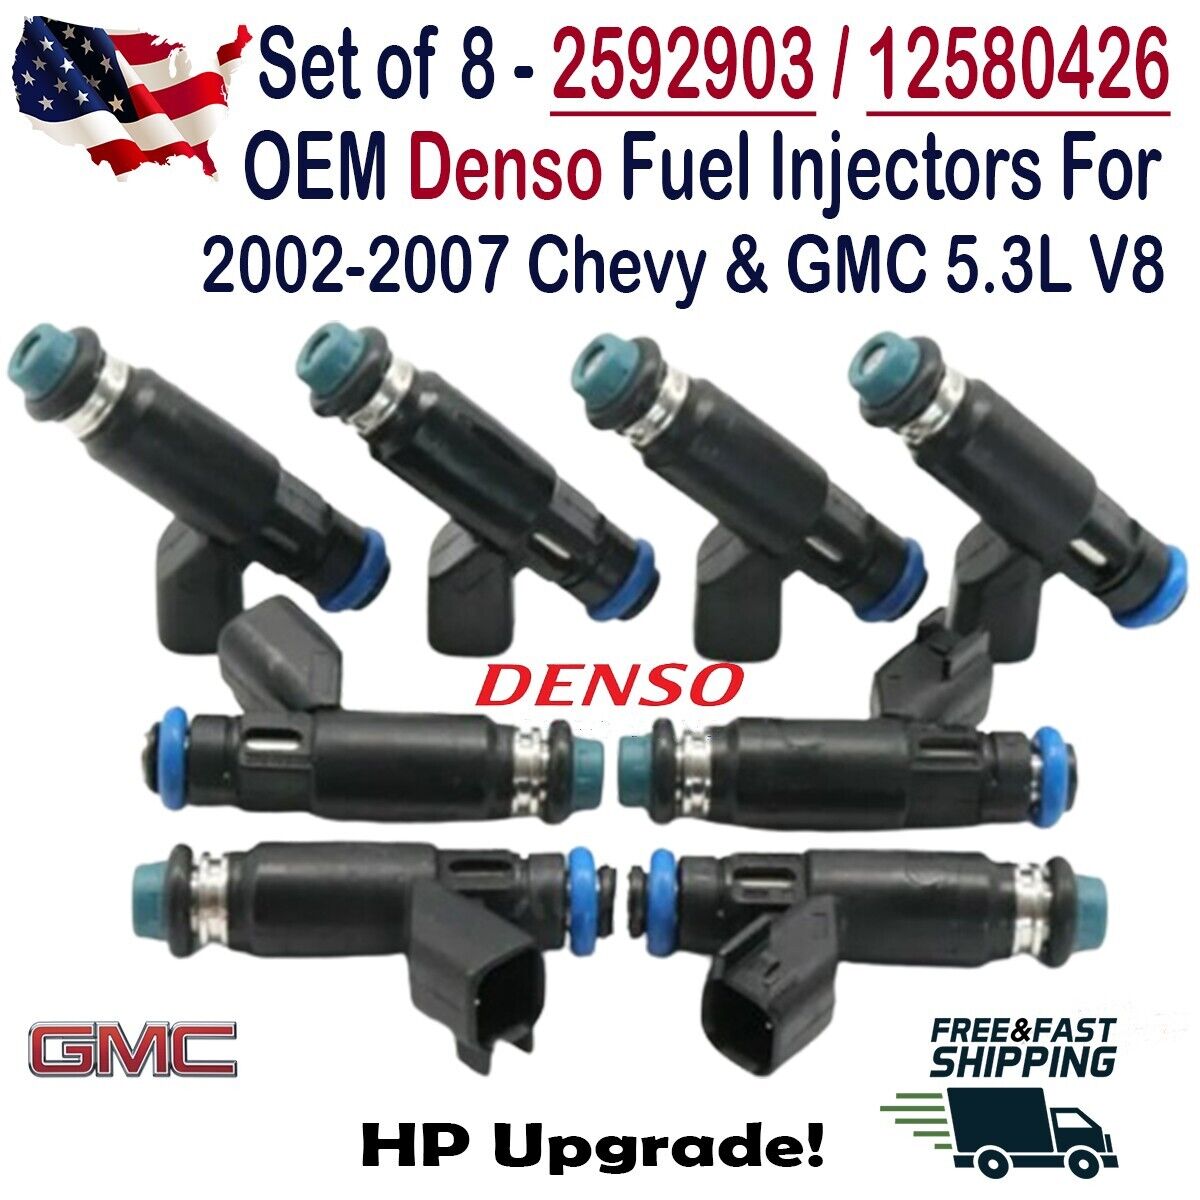 OEM Denso 8Pcs HP Upgrade Fuel Injectors for 2002-2007 Chevrolet & GMC 5.3L V8 S